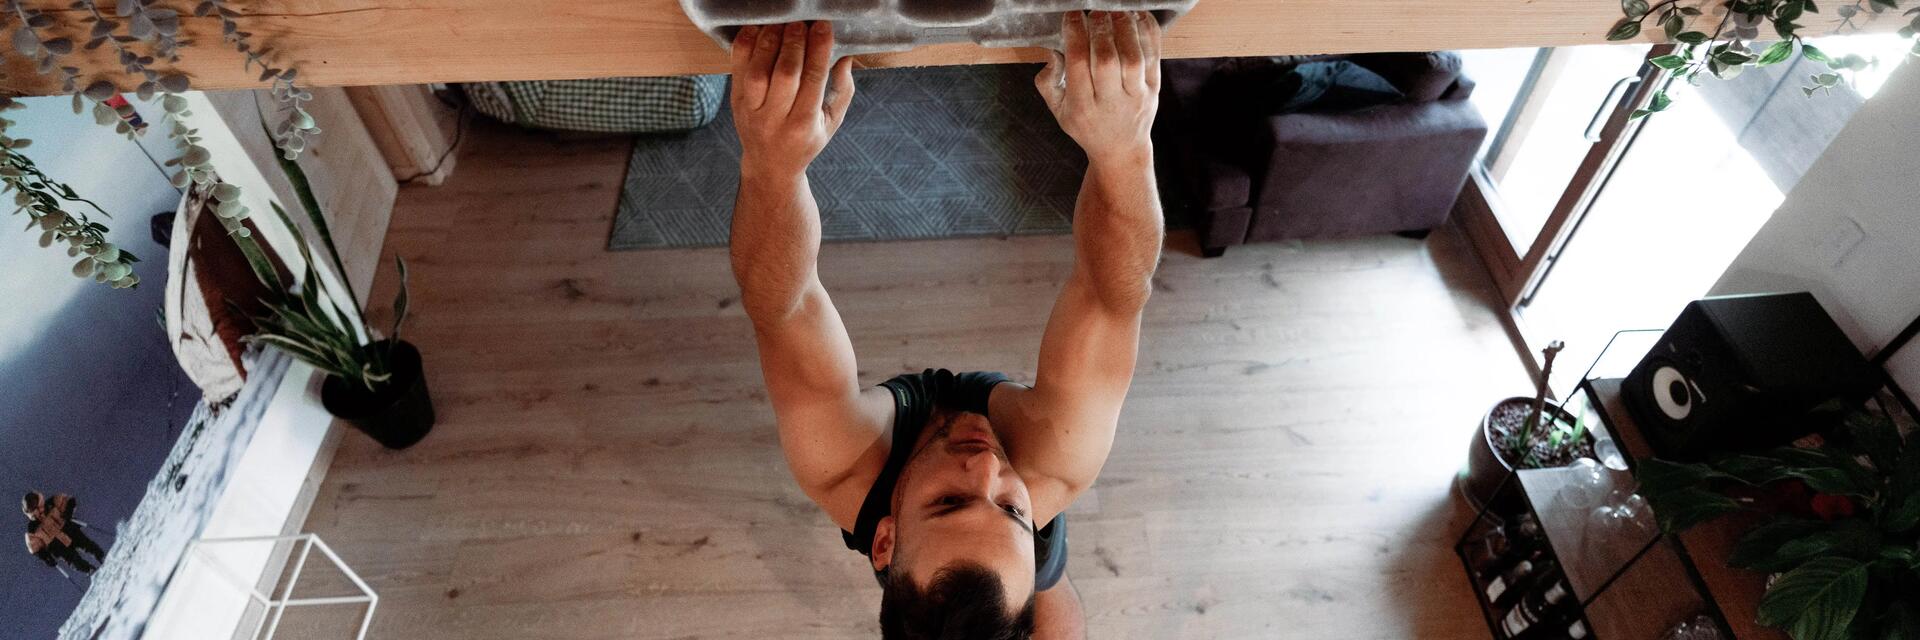 Mężczyzna wykonujący trening wspinaczkowy przy użyciu chwytotablicy zamontowanej na belce w domu 